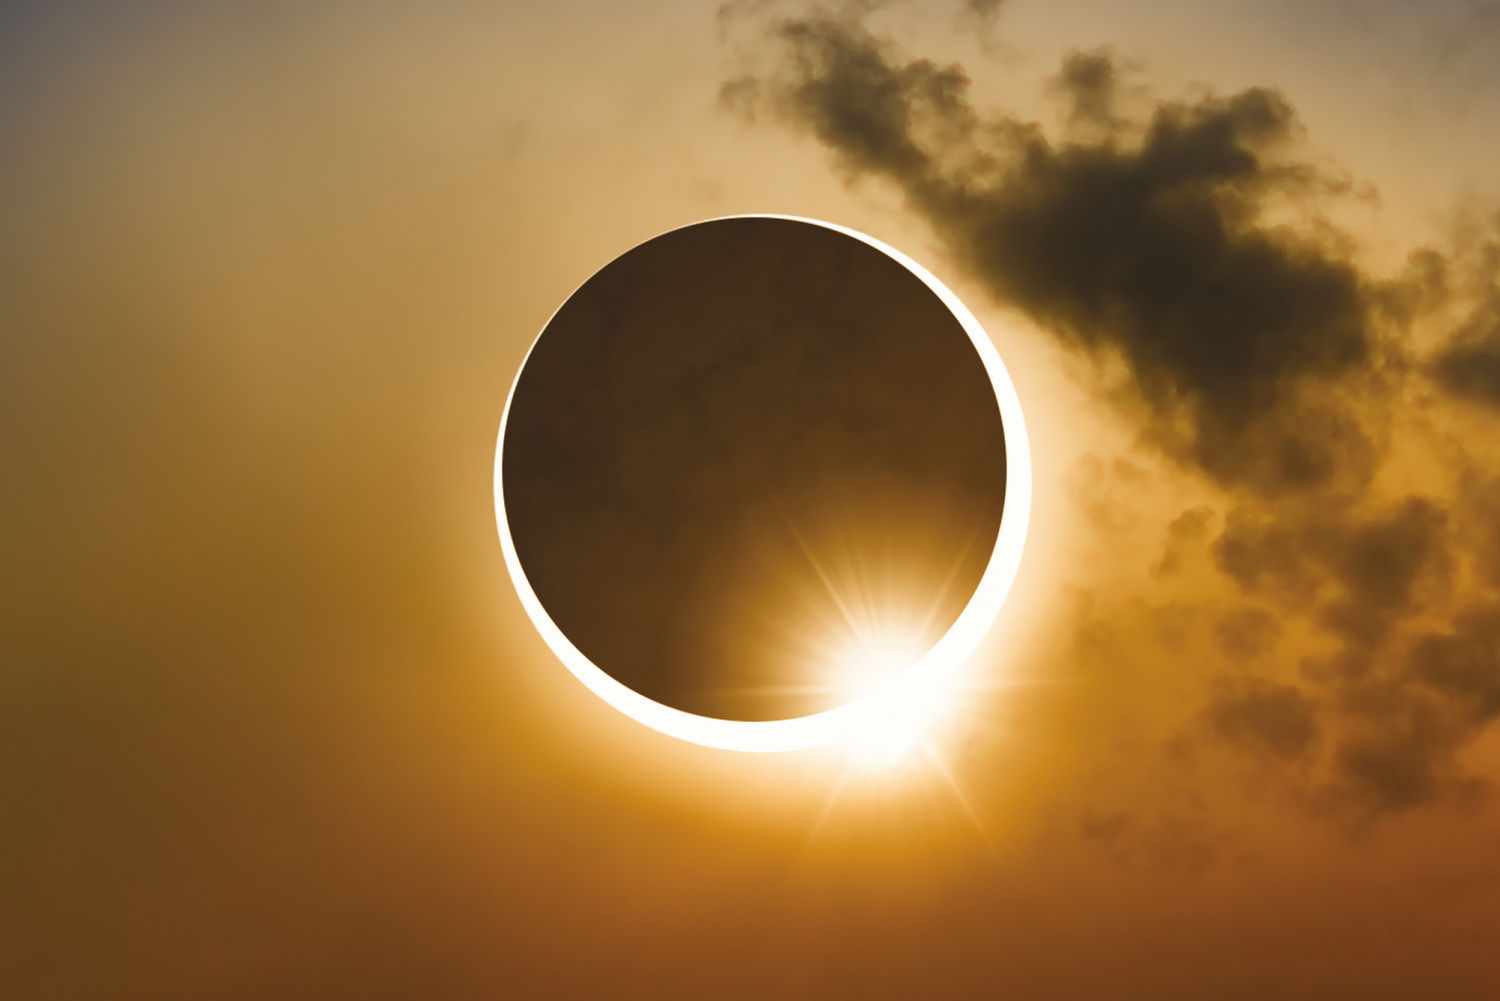 bahrain,eclipse,solar,partial,witness